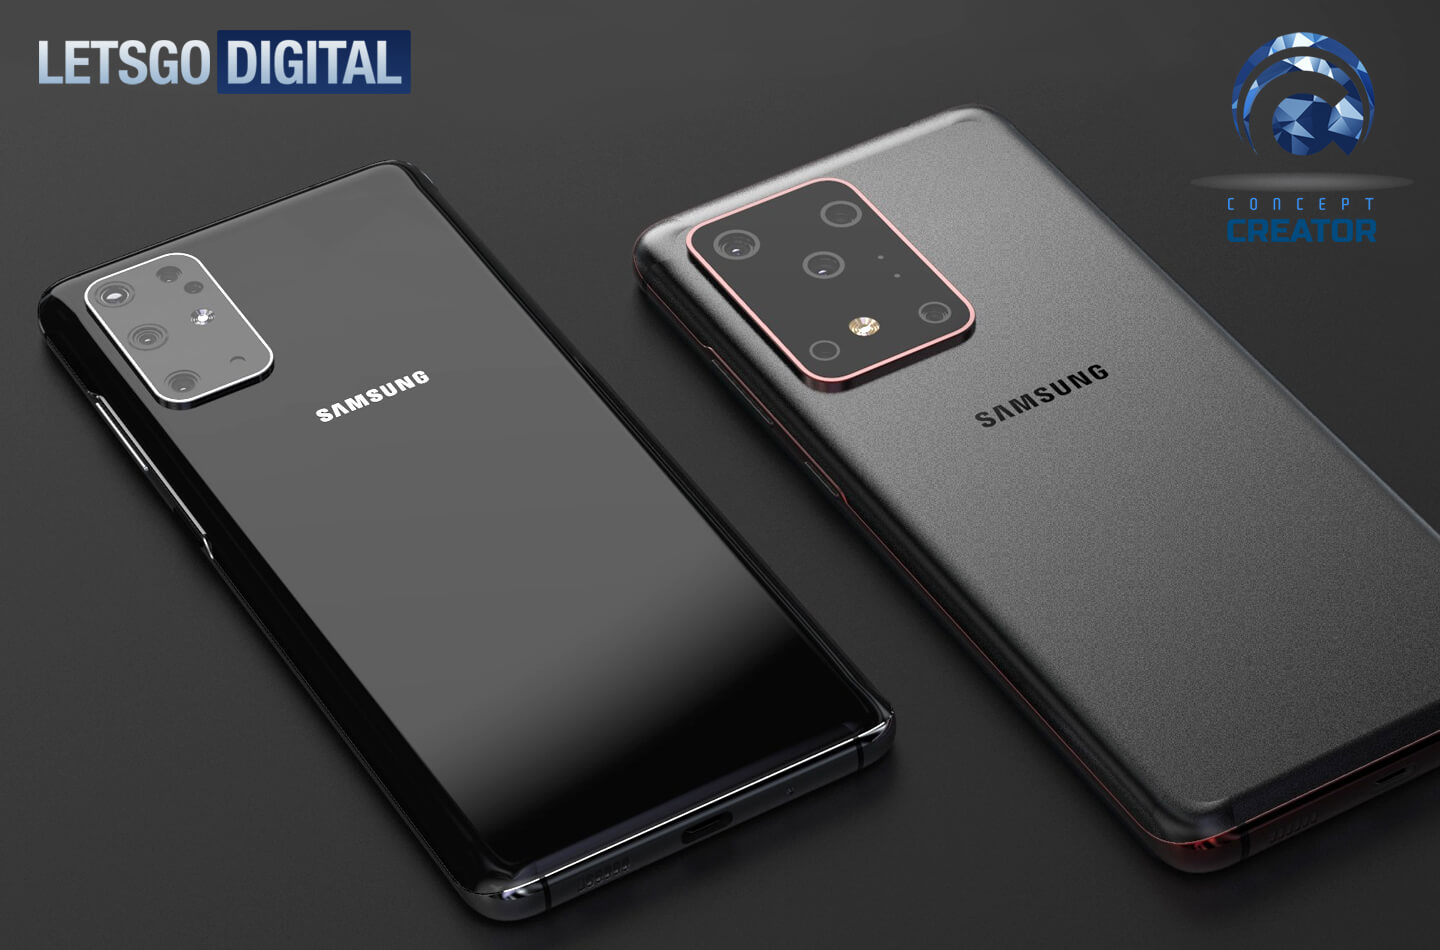 Модель Samsung Galaxy S20 Ultra